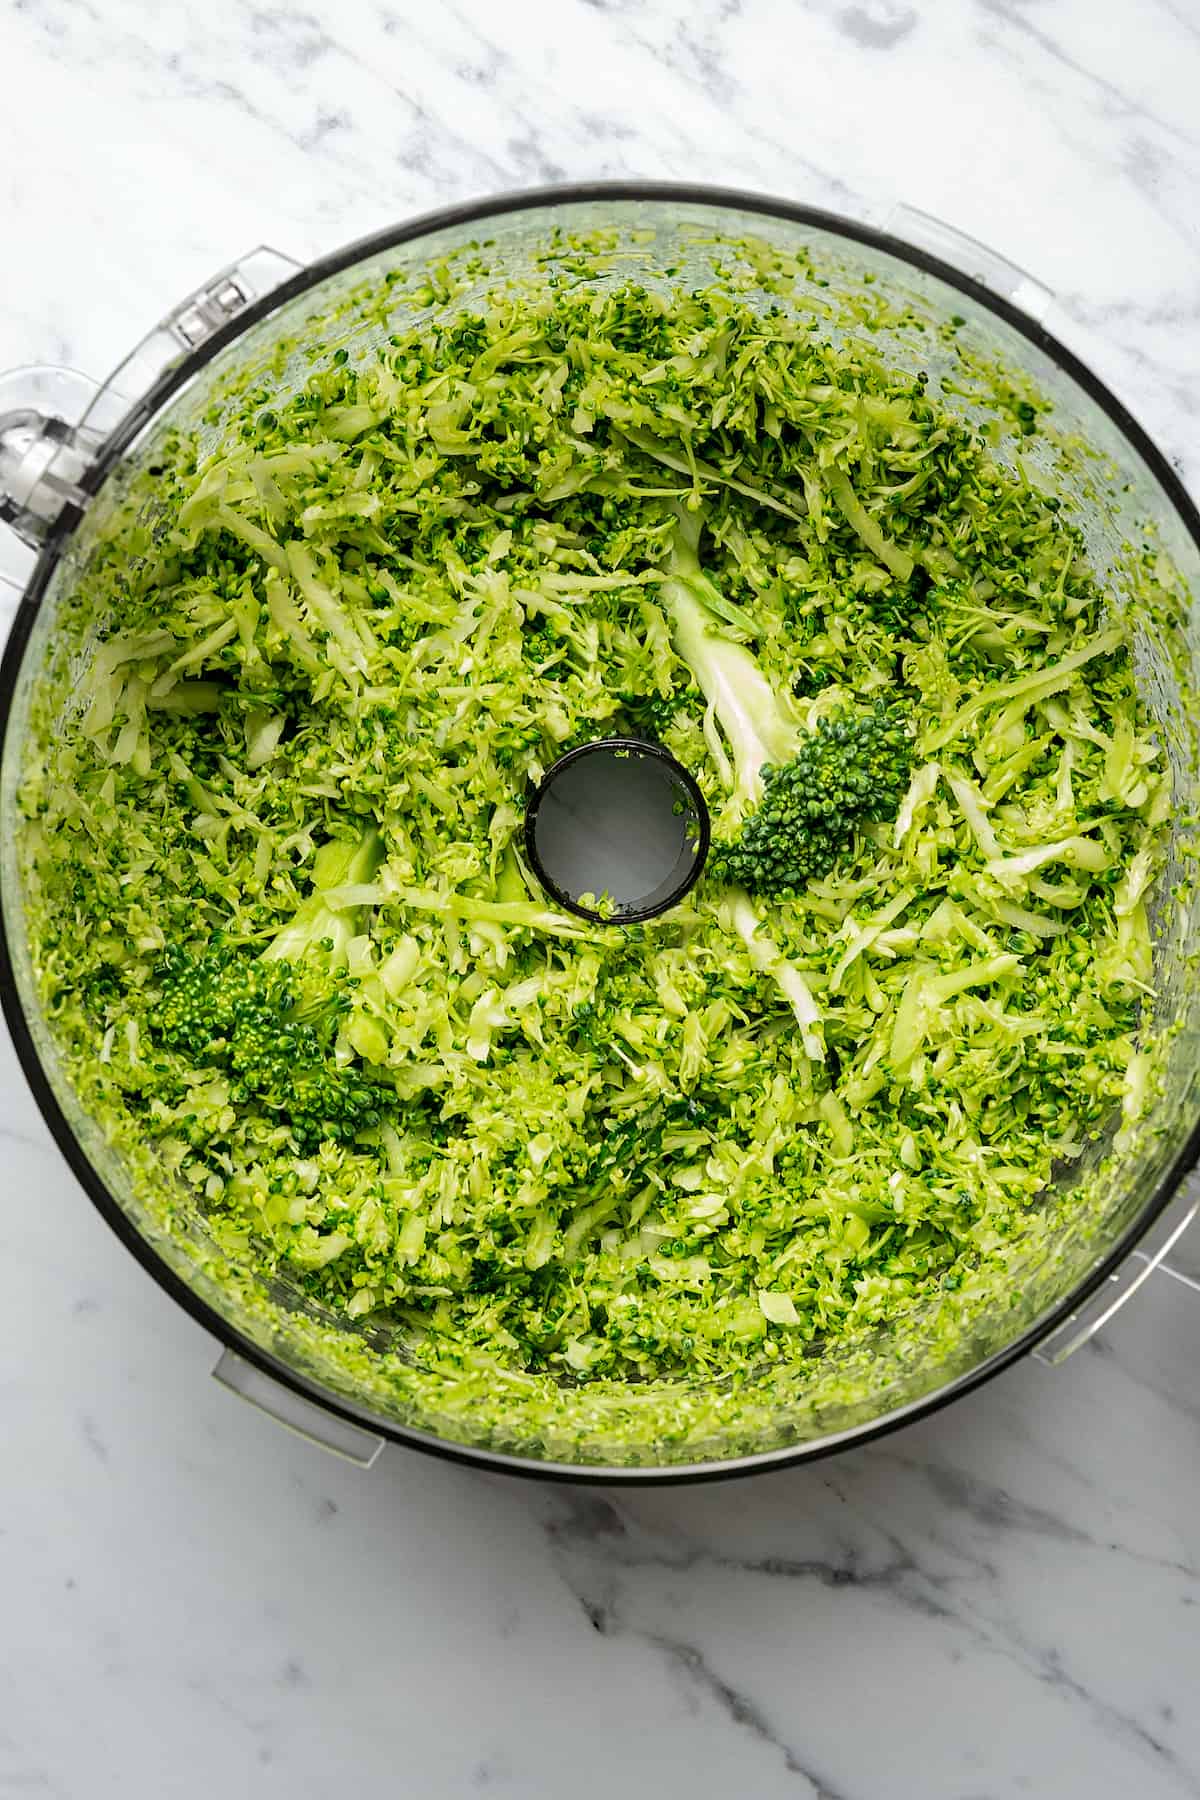 Shredded broccoli in a food processor.